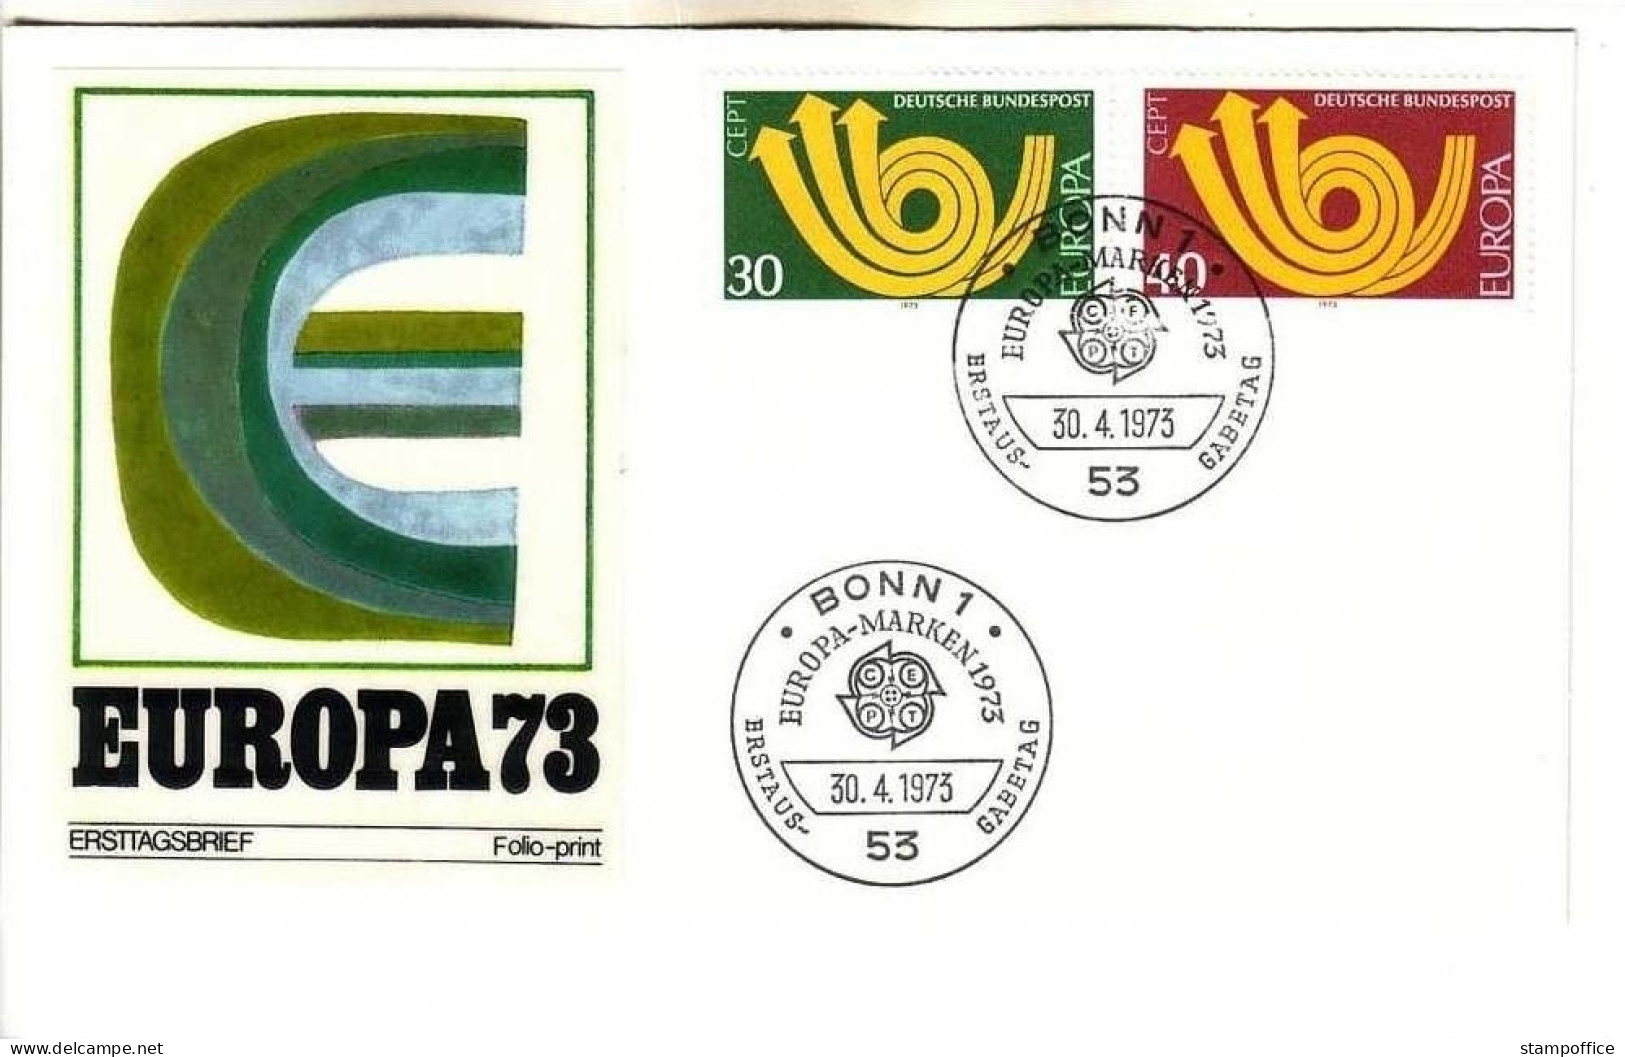 DEUTSCHLAND MI-NR. 768-769 FDC EUROPA 1973 POSTHORN - 1973